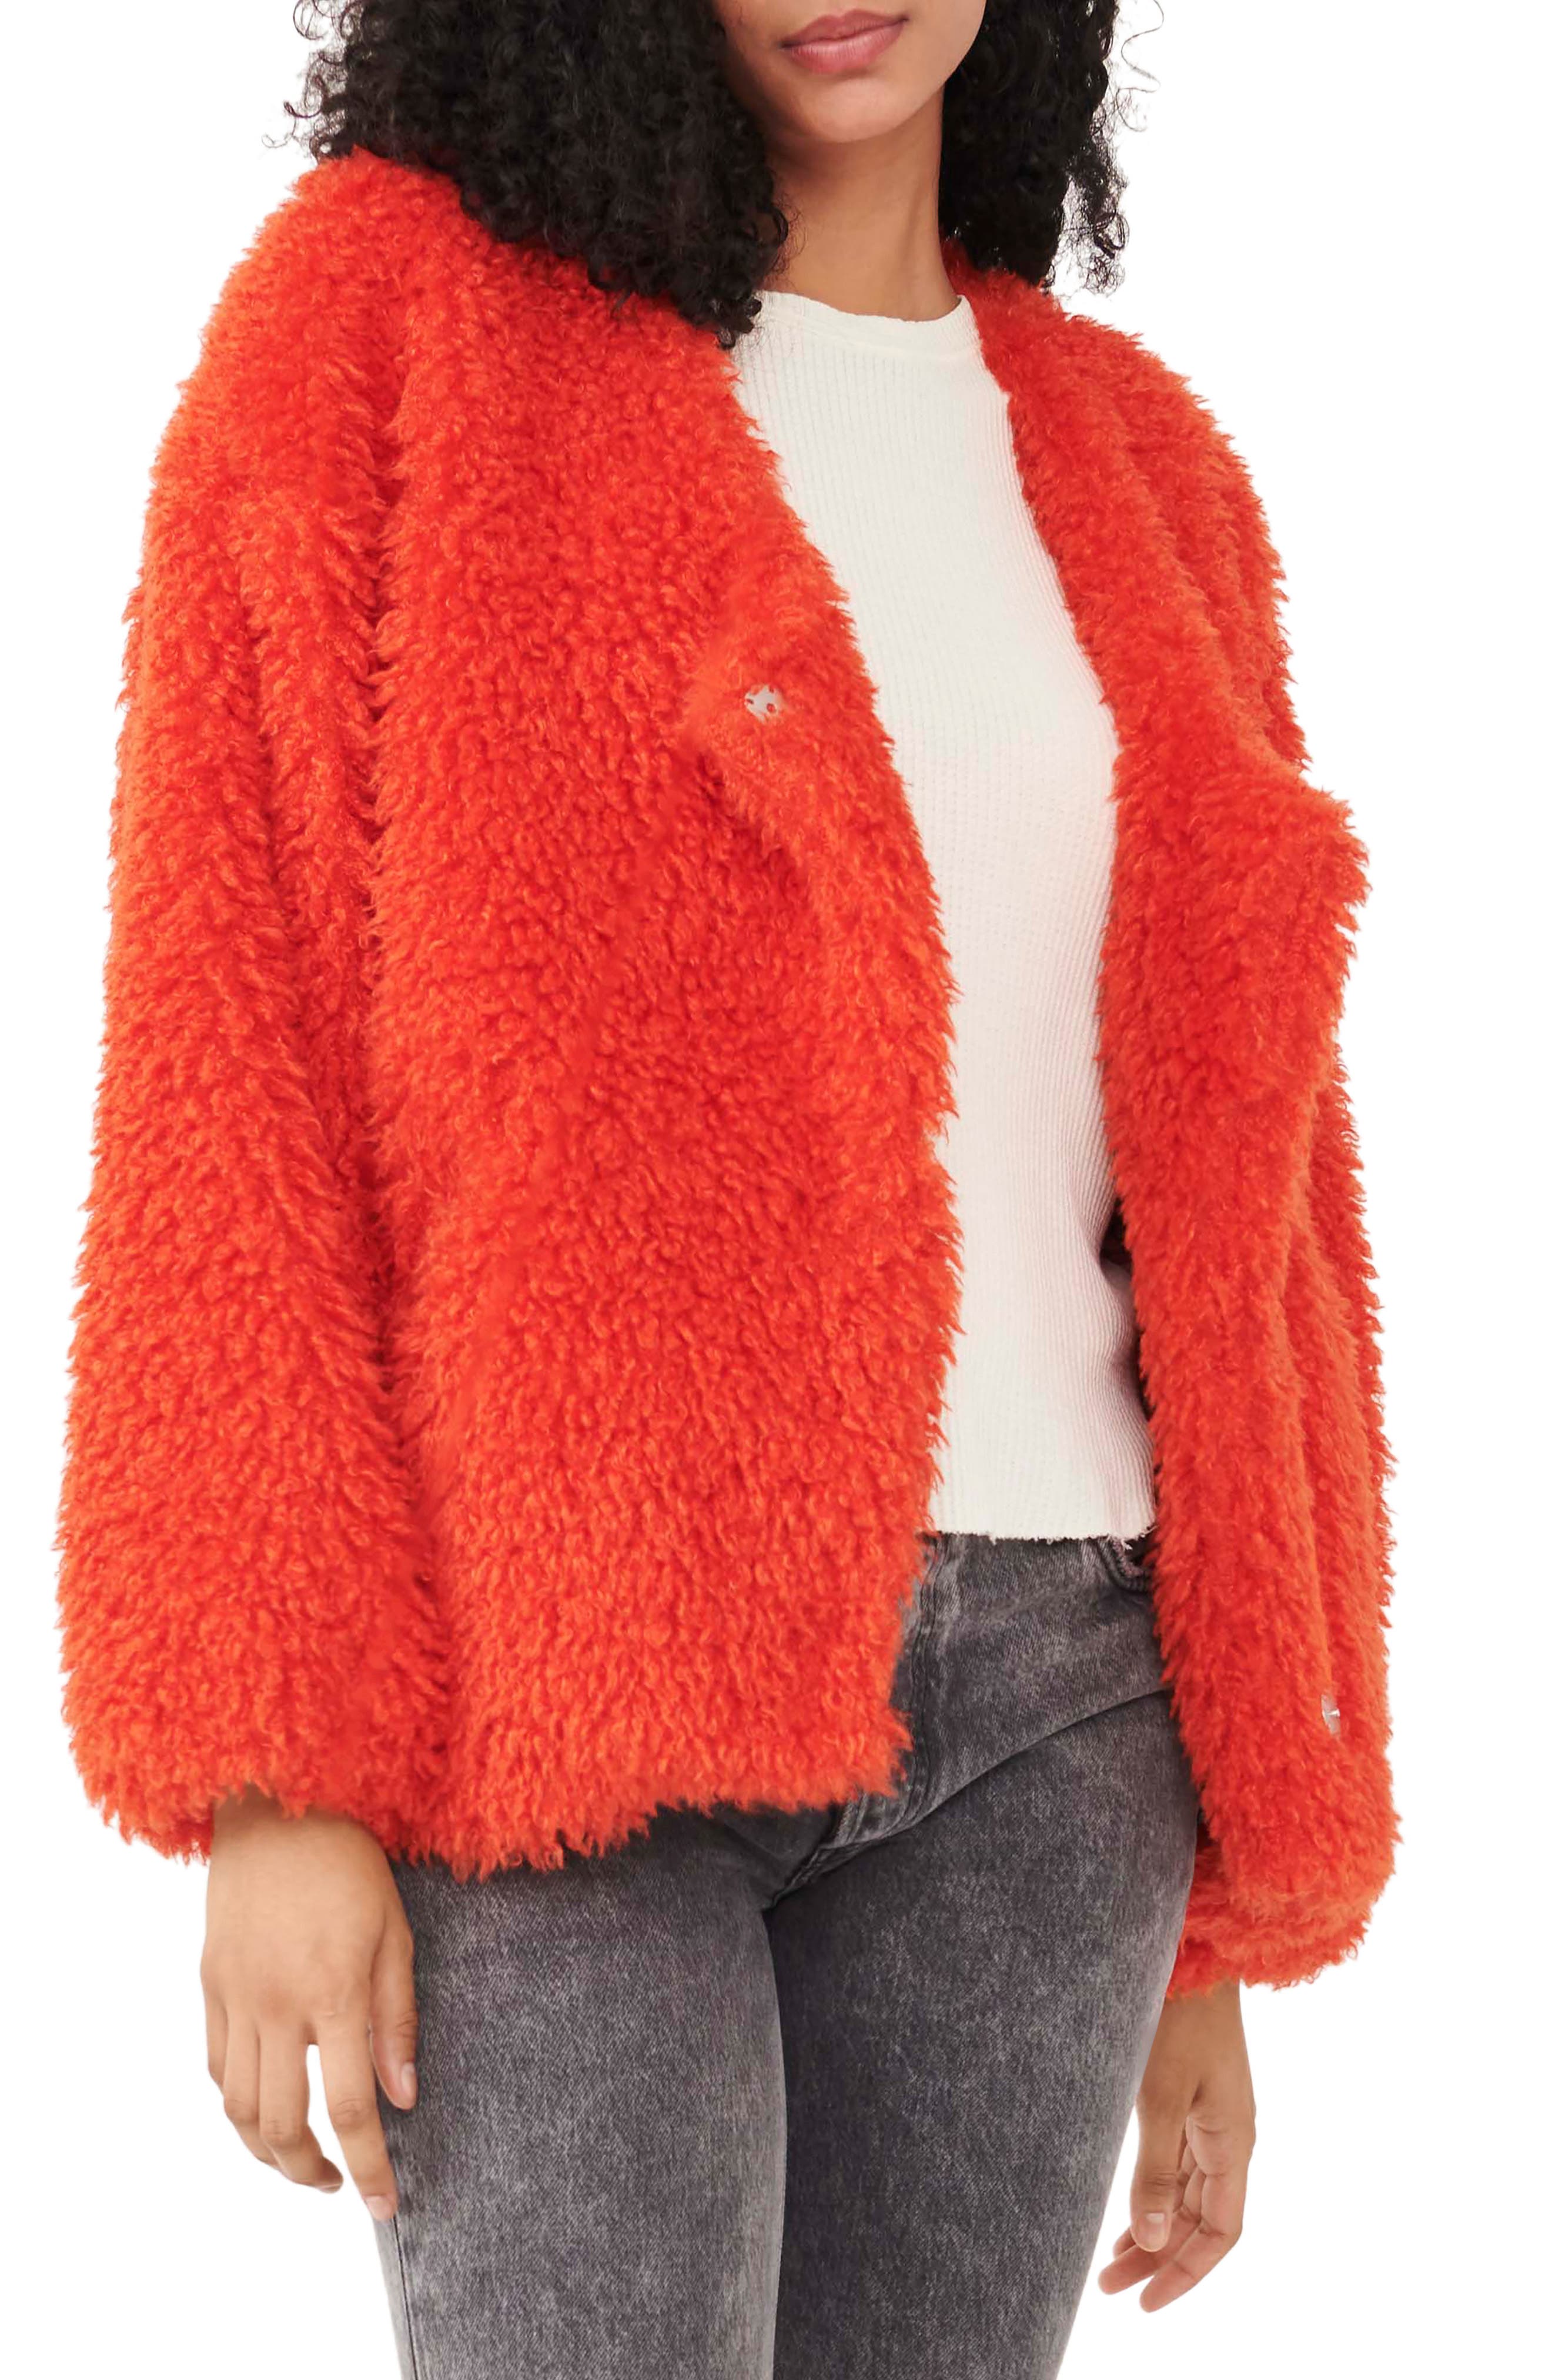 Women Fluffy Fuzzy Faux Fur Coat Open Front Cardigan Jacket Coat Outwear for Wedding Party Winter